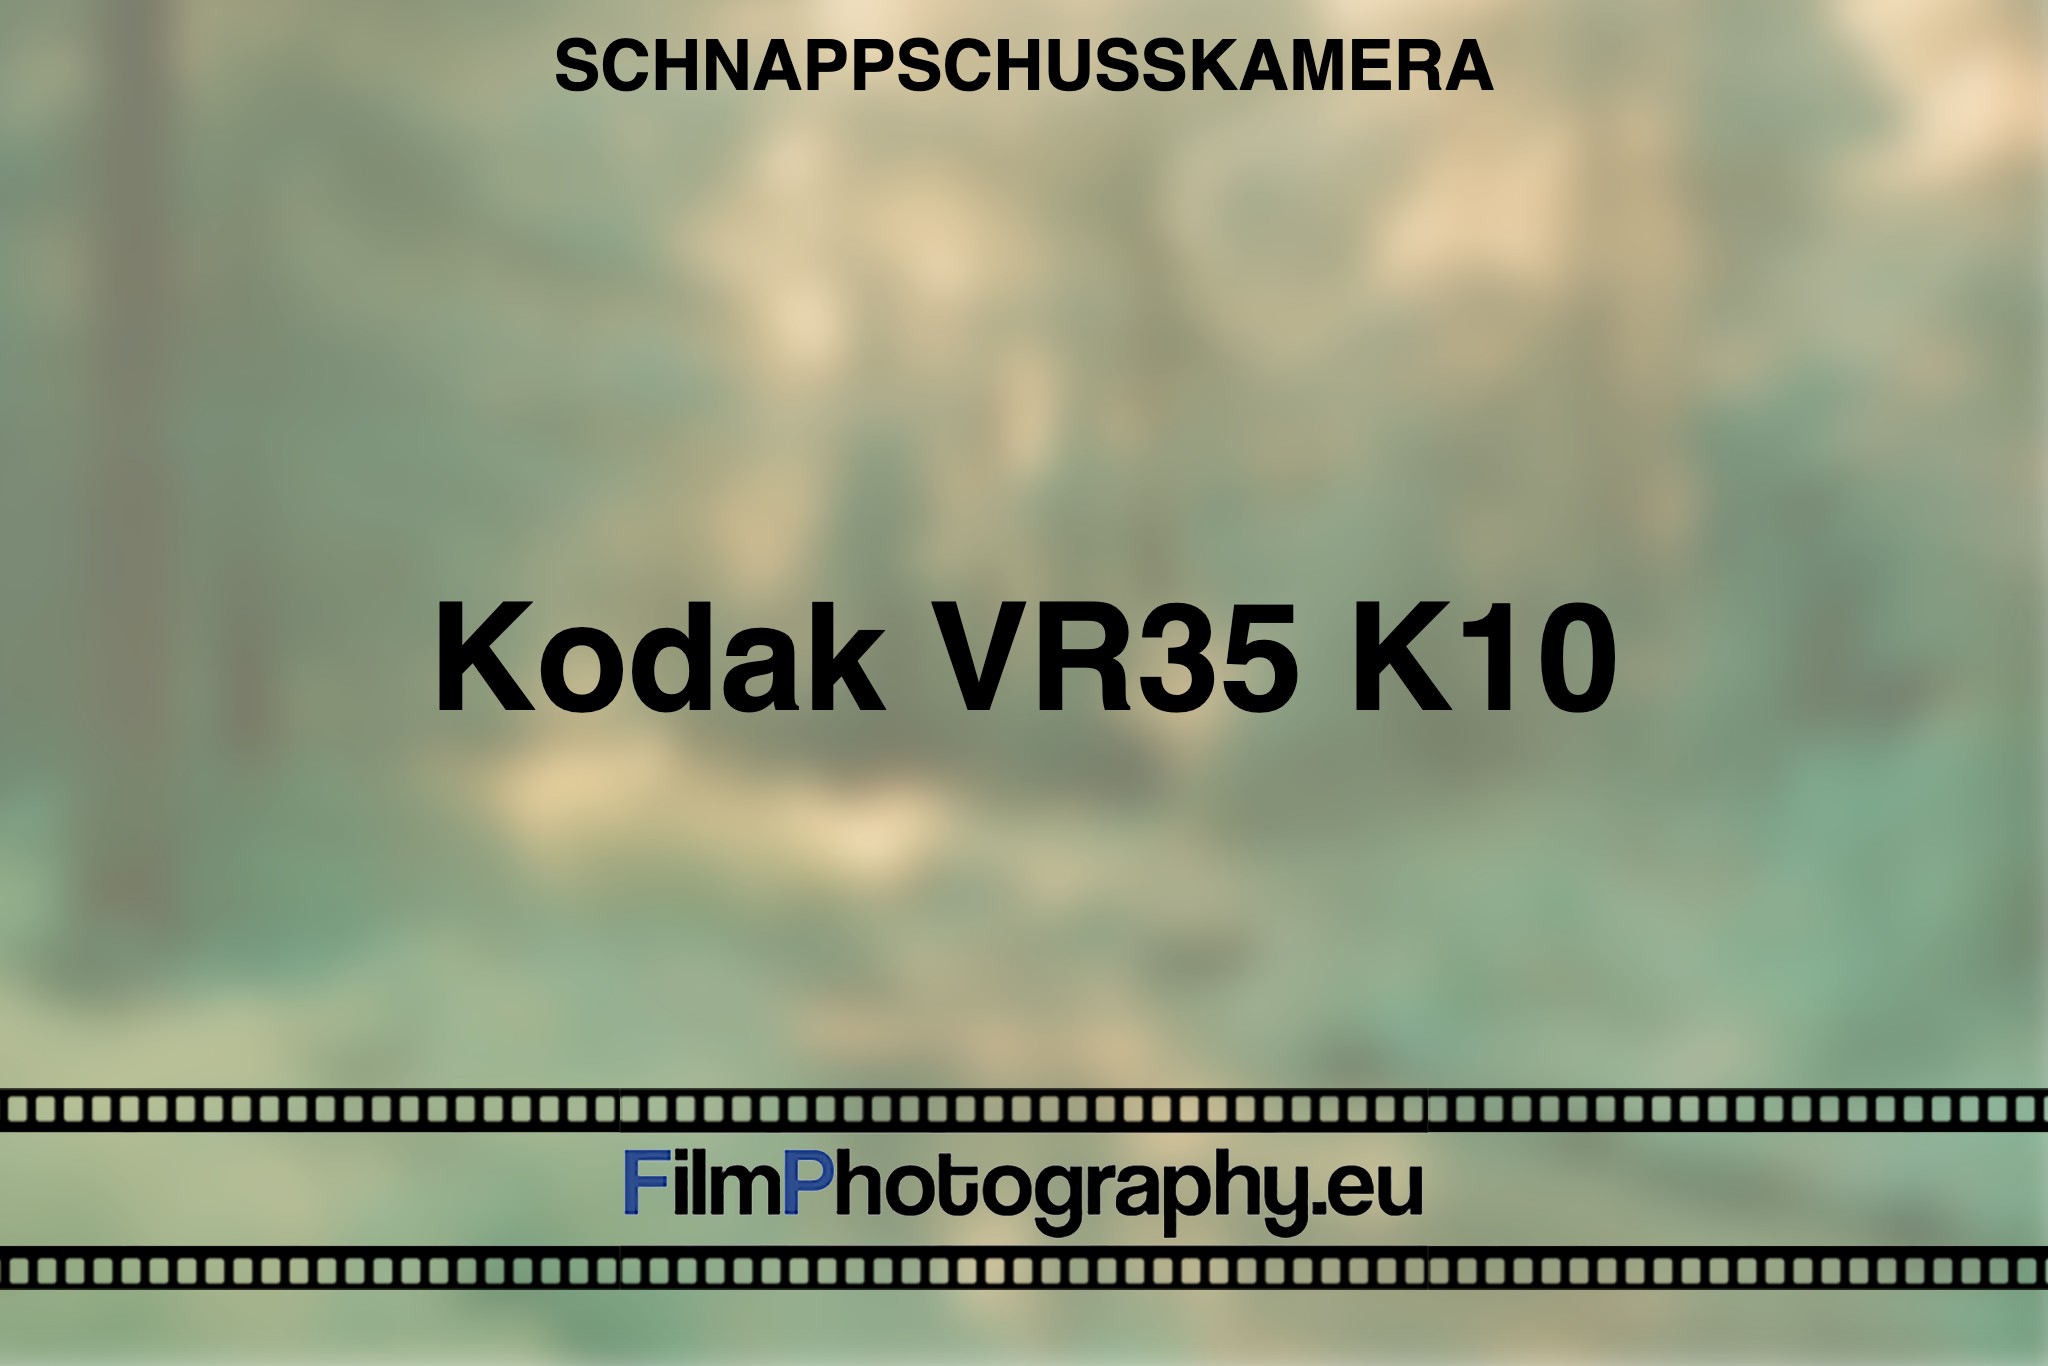 kodak-vr35-k10-schnappschusskamera-bnv